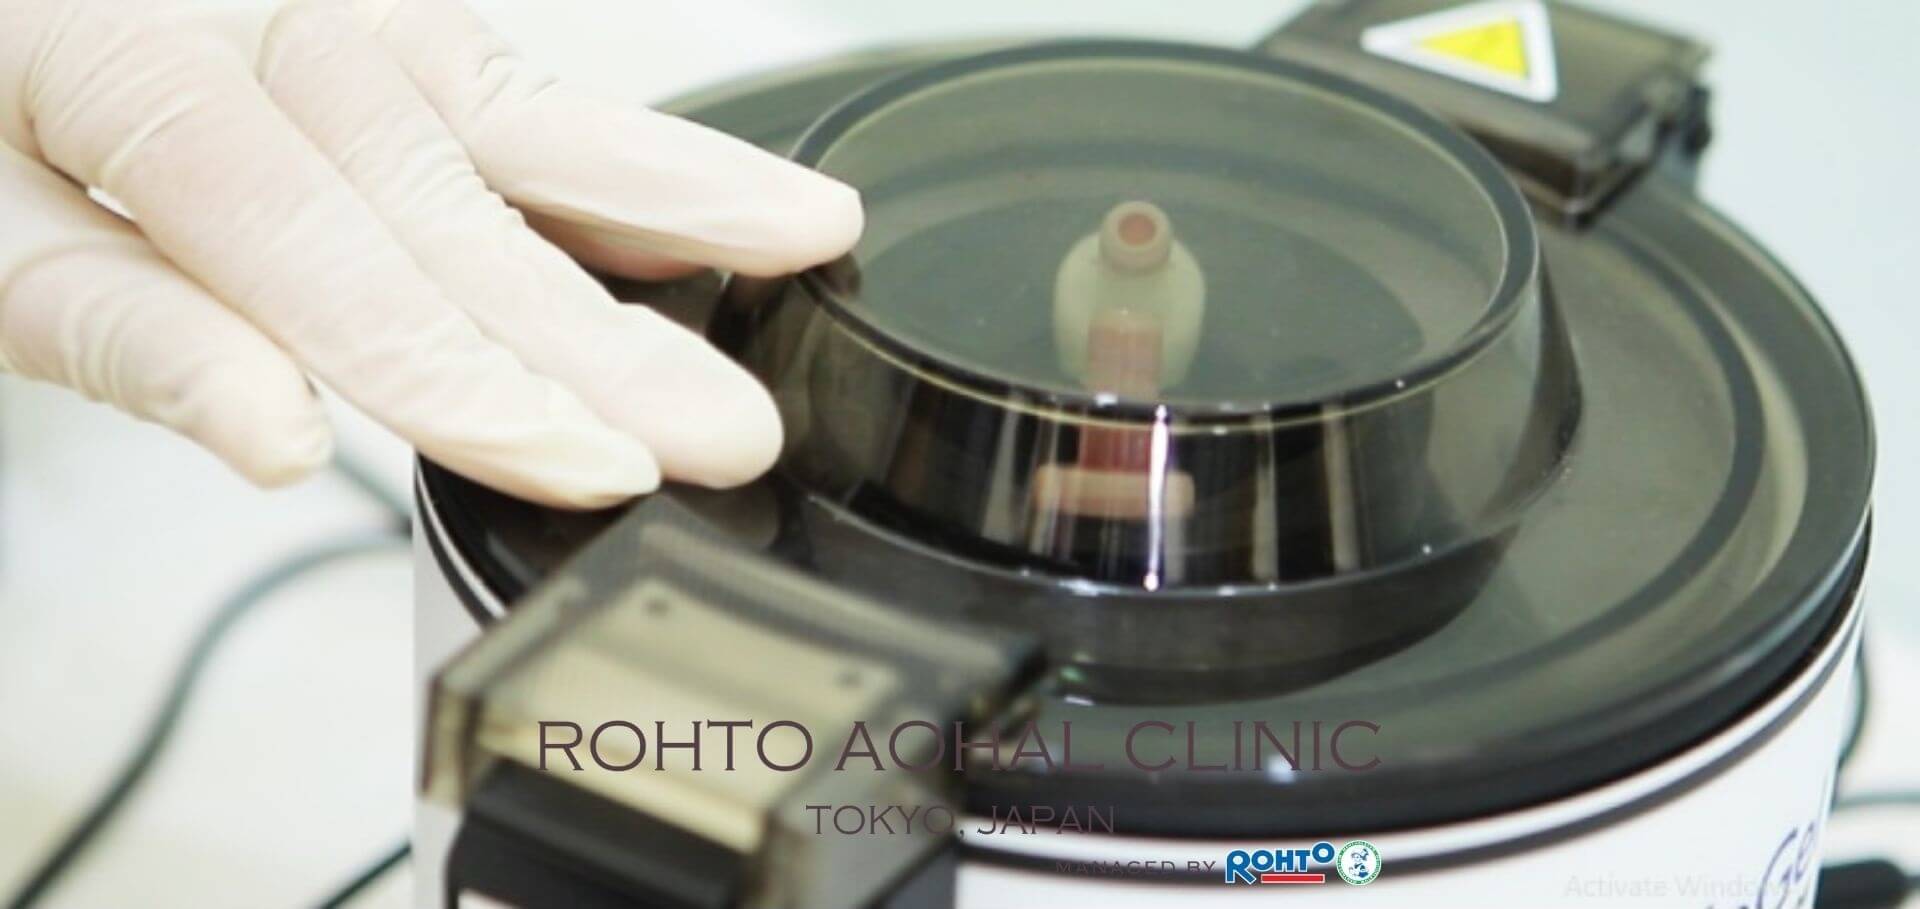 Công nghệ chiết tách huyết tương hiện đại độc quyền từ Rohto - Nhật Bản